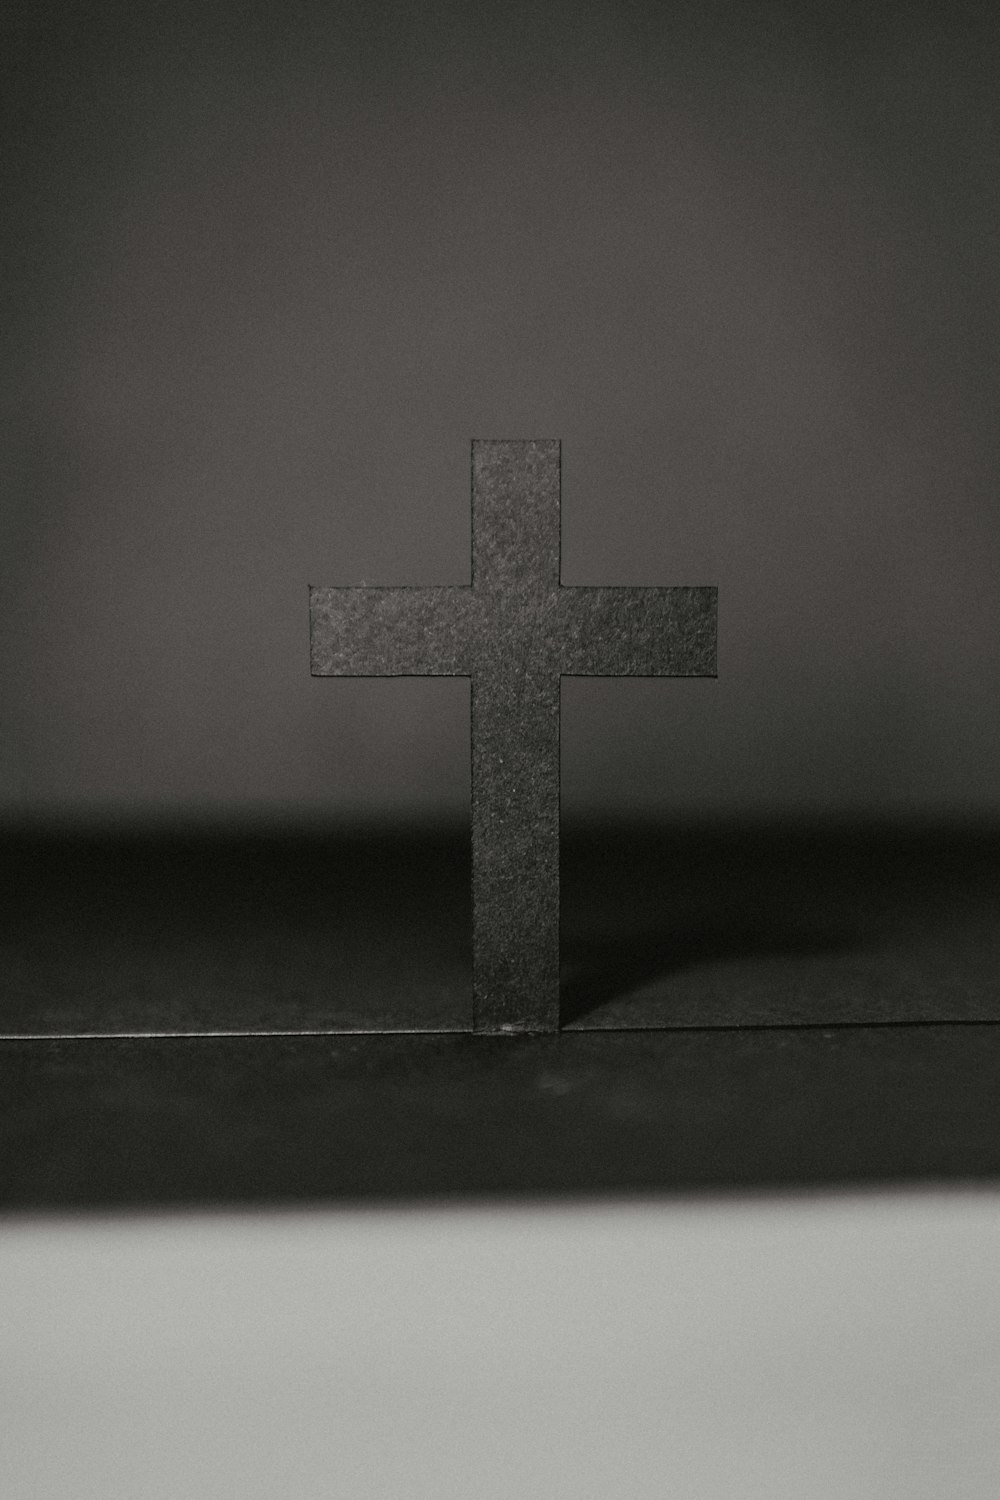 Graustufenfoto des Kreuzes auf dem Tisch